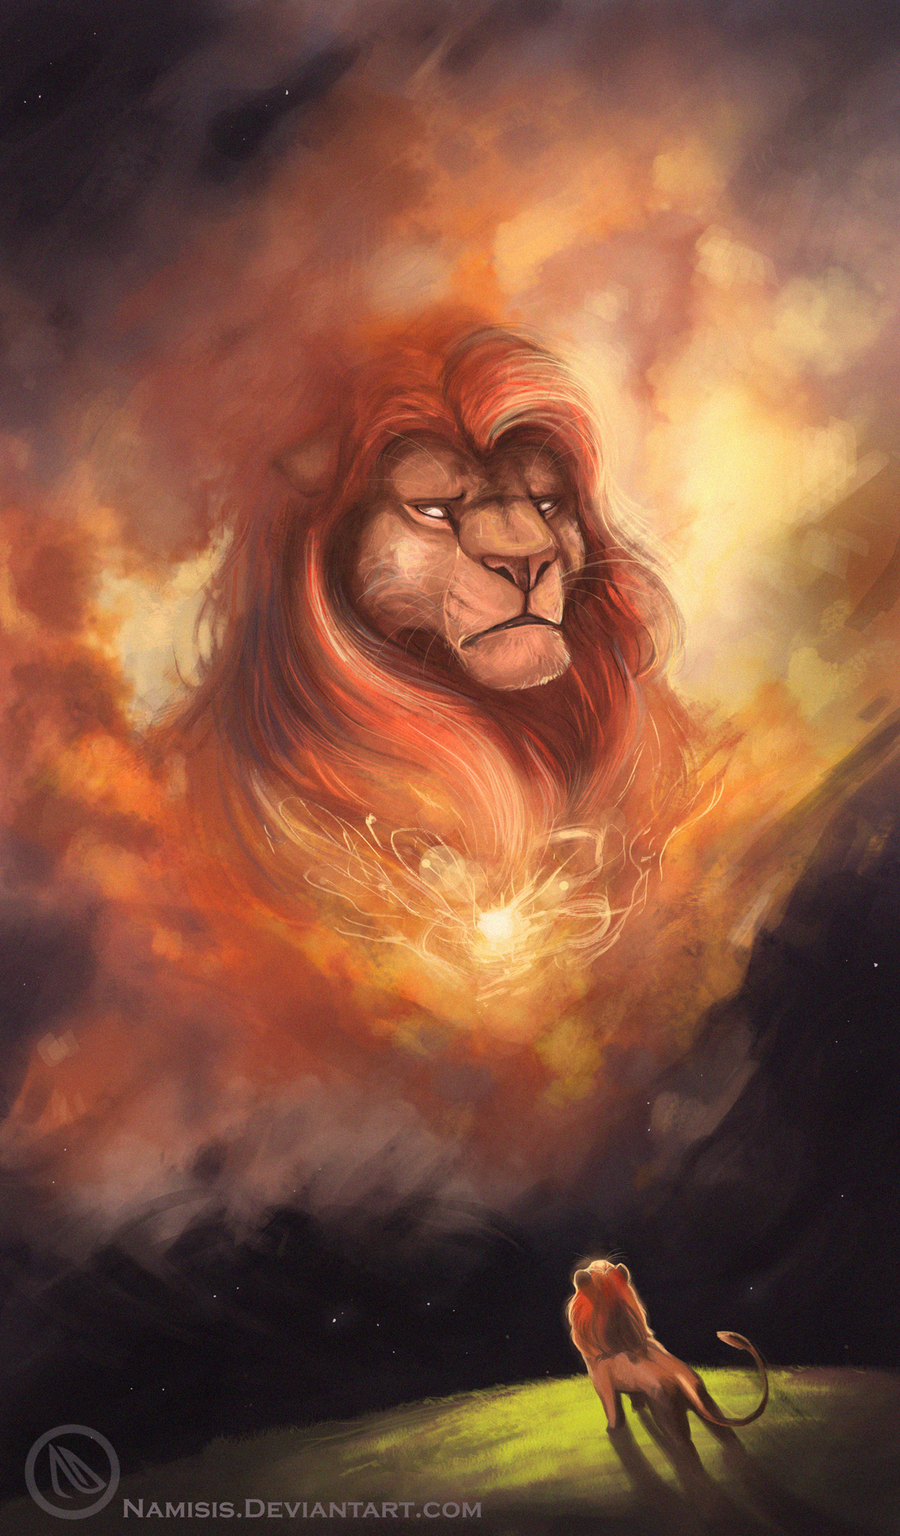 Фото Симба смотрит на Муфасу в небесах, арт на мультфильм Король лев / The Lion king, художник namisis